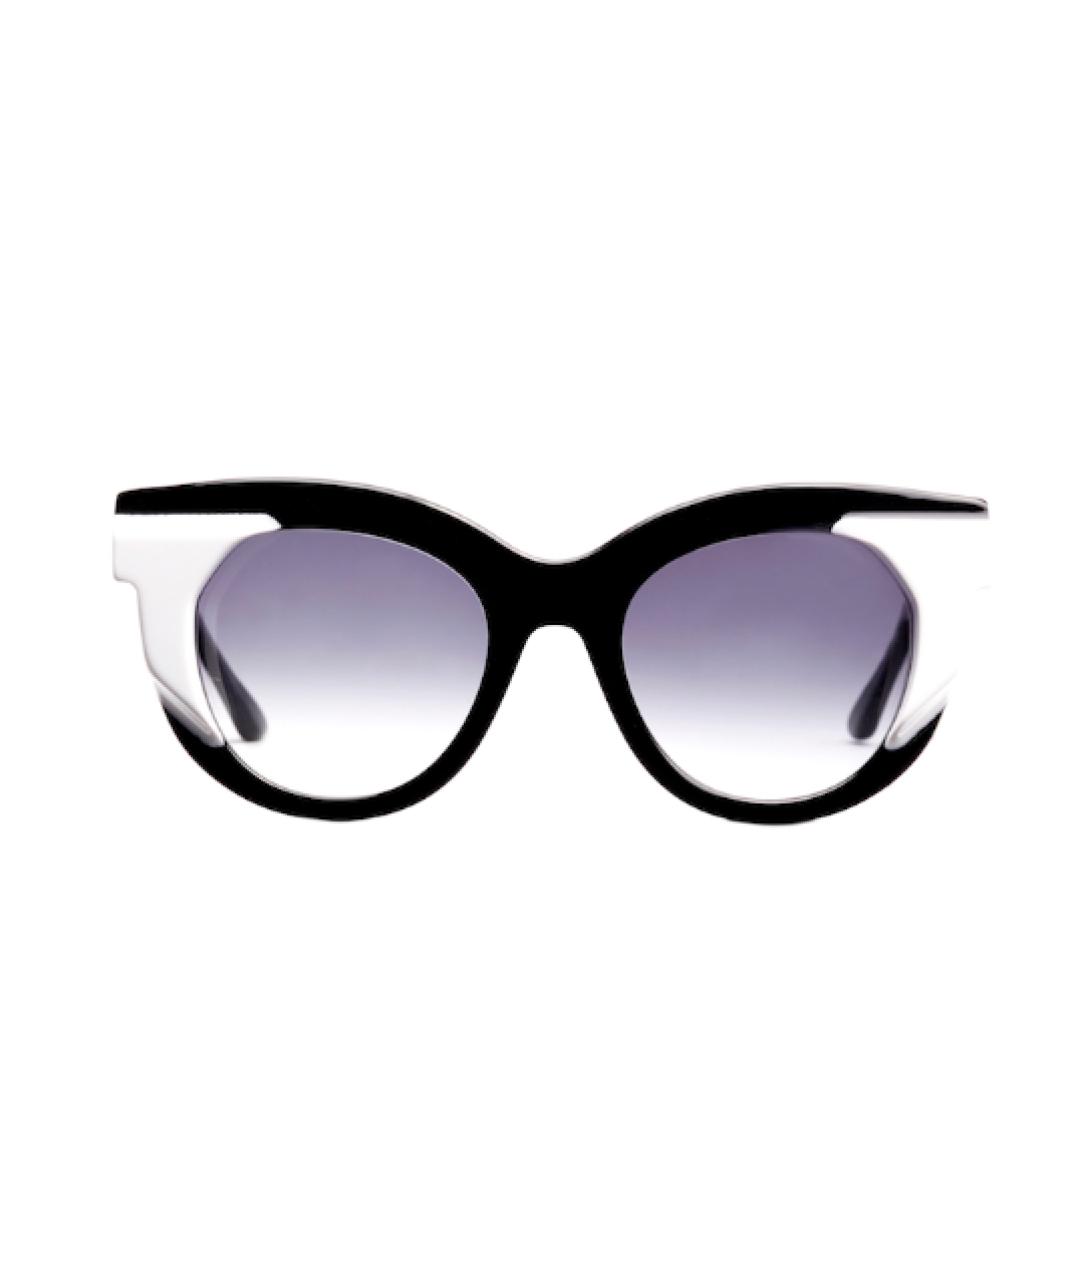 THIERRY LASRY Пластиковые солнцезащитные очки, фото 1